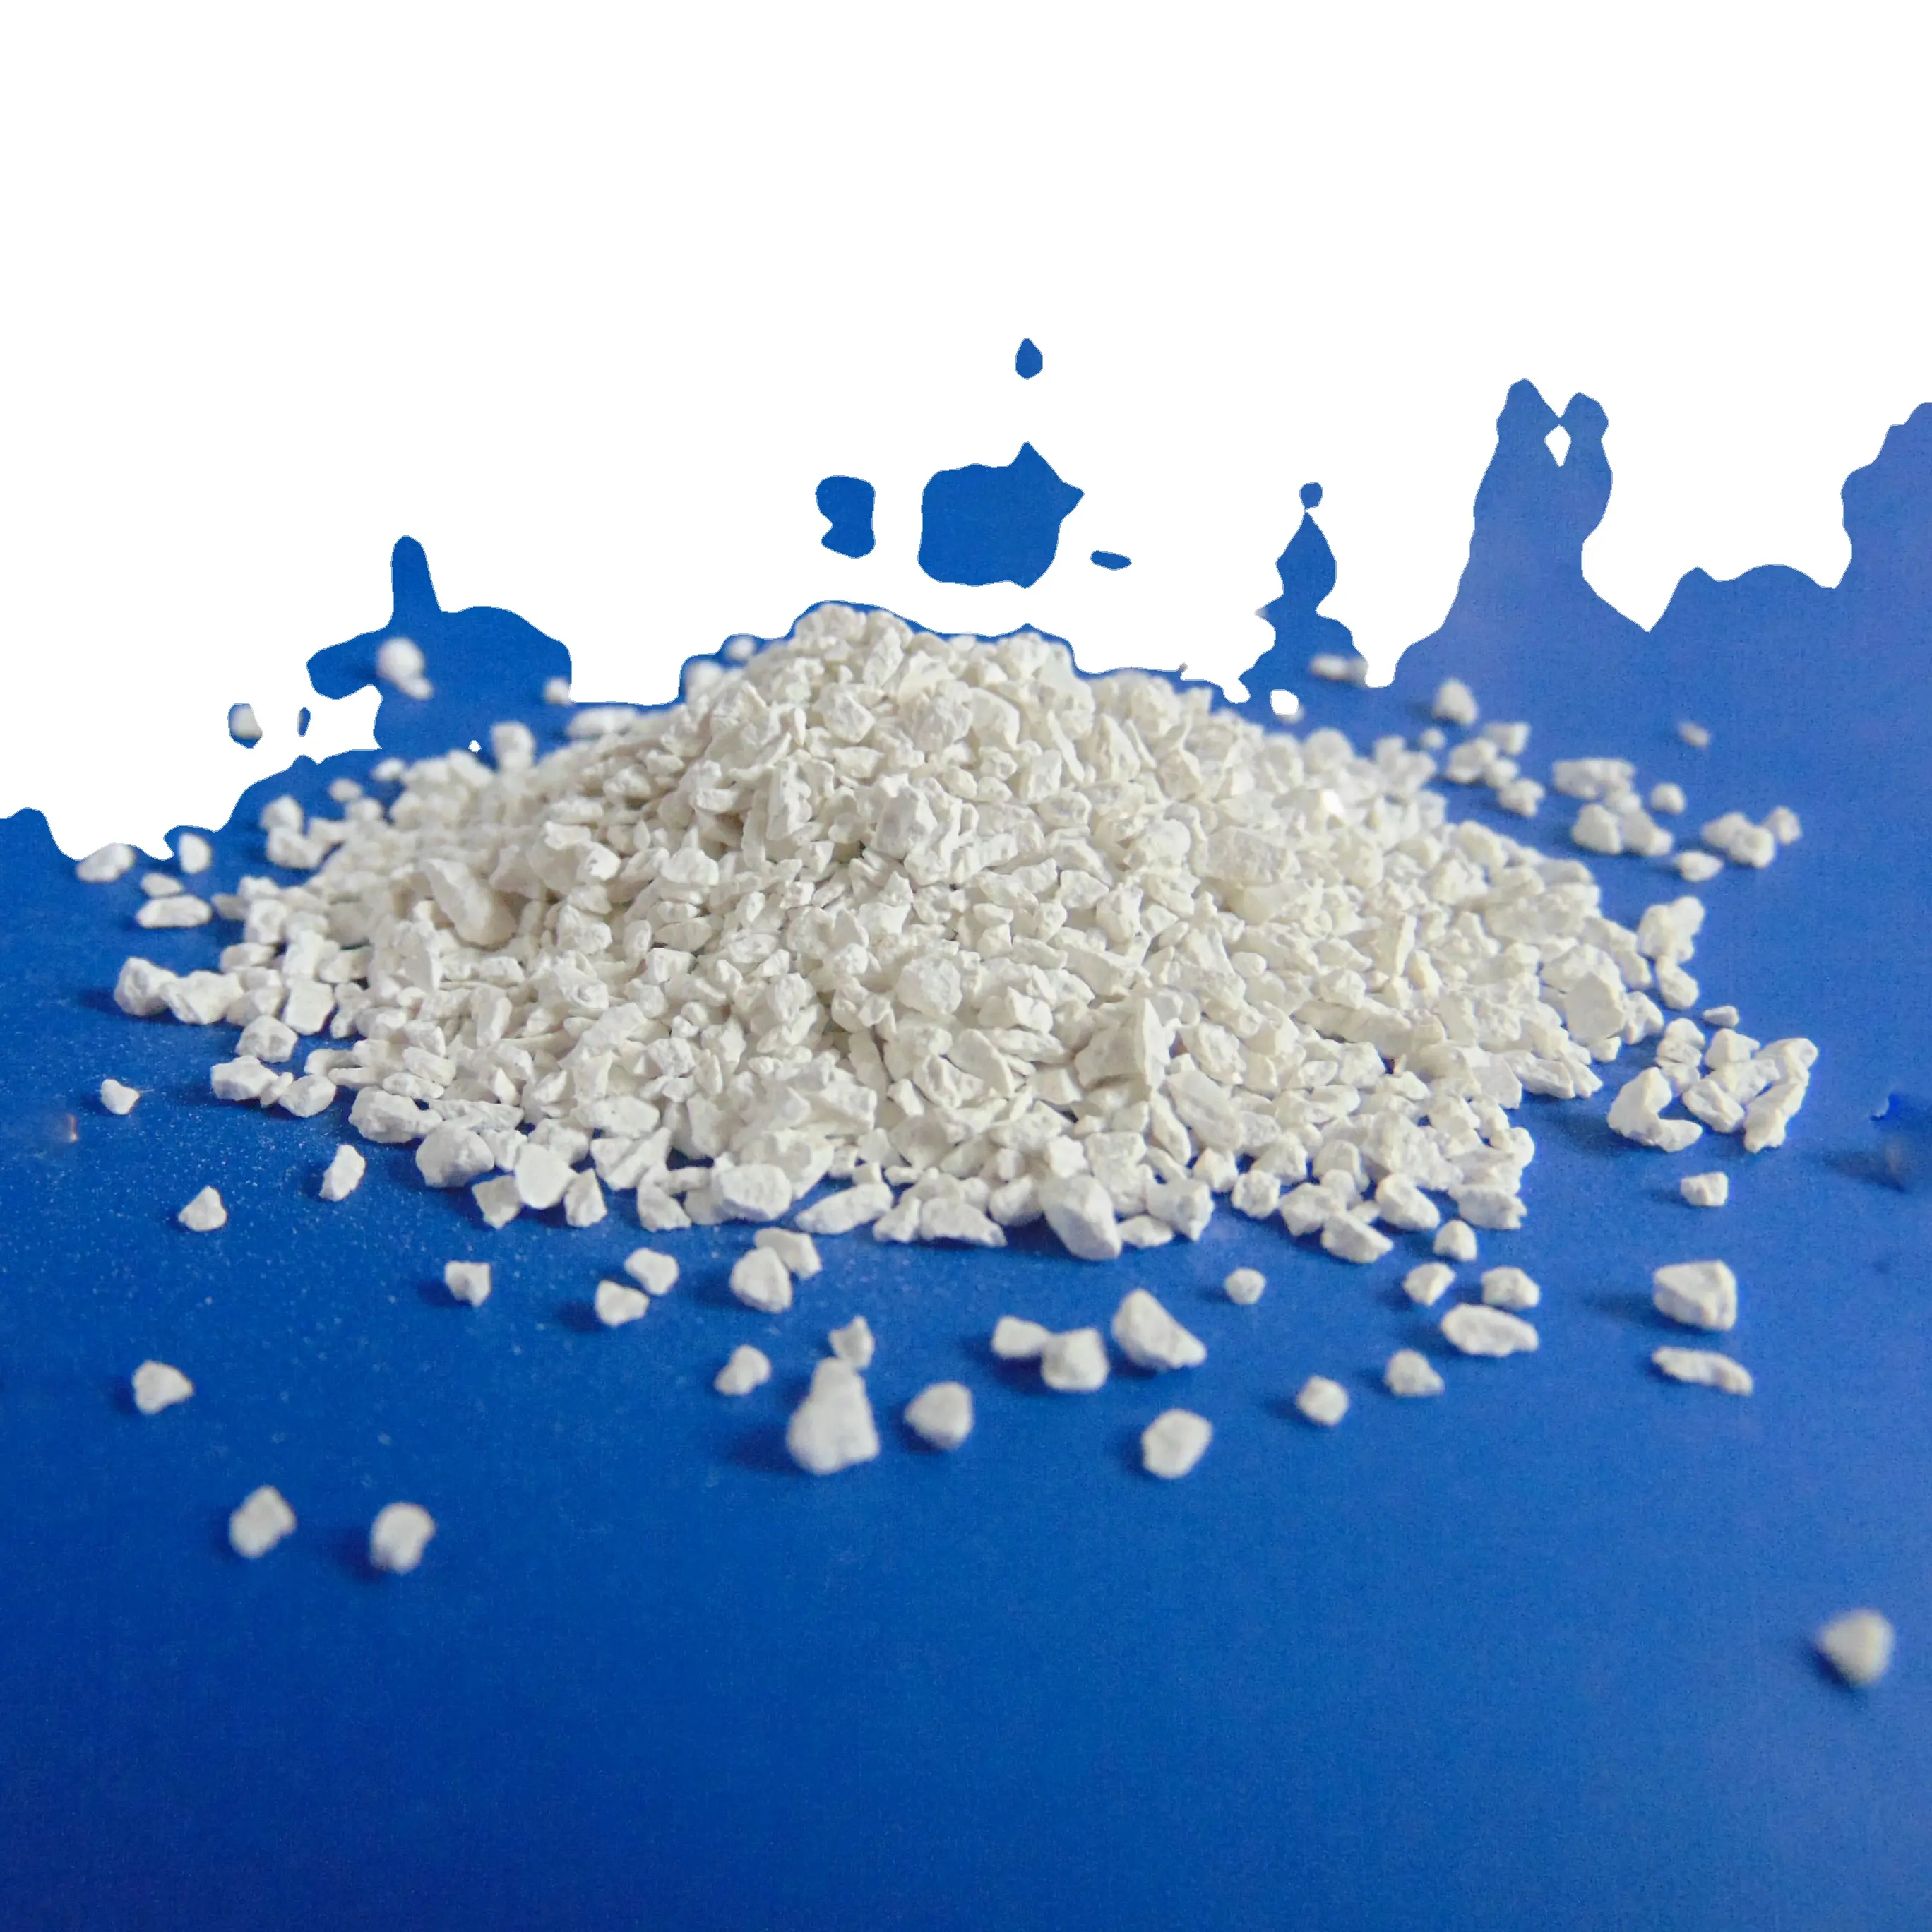 Entrega rápida y segura Hipoclorito de calcio 70% de alta calidad a granel por proceso de sodio